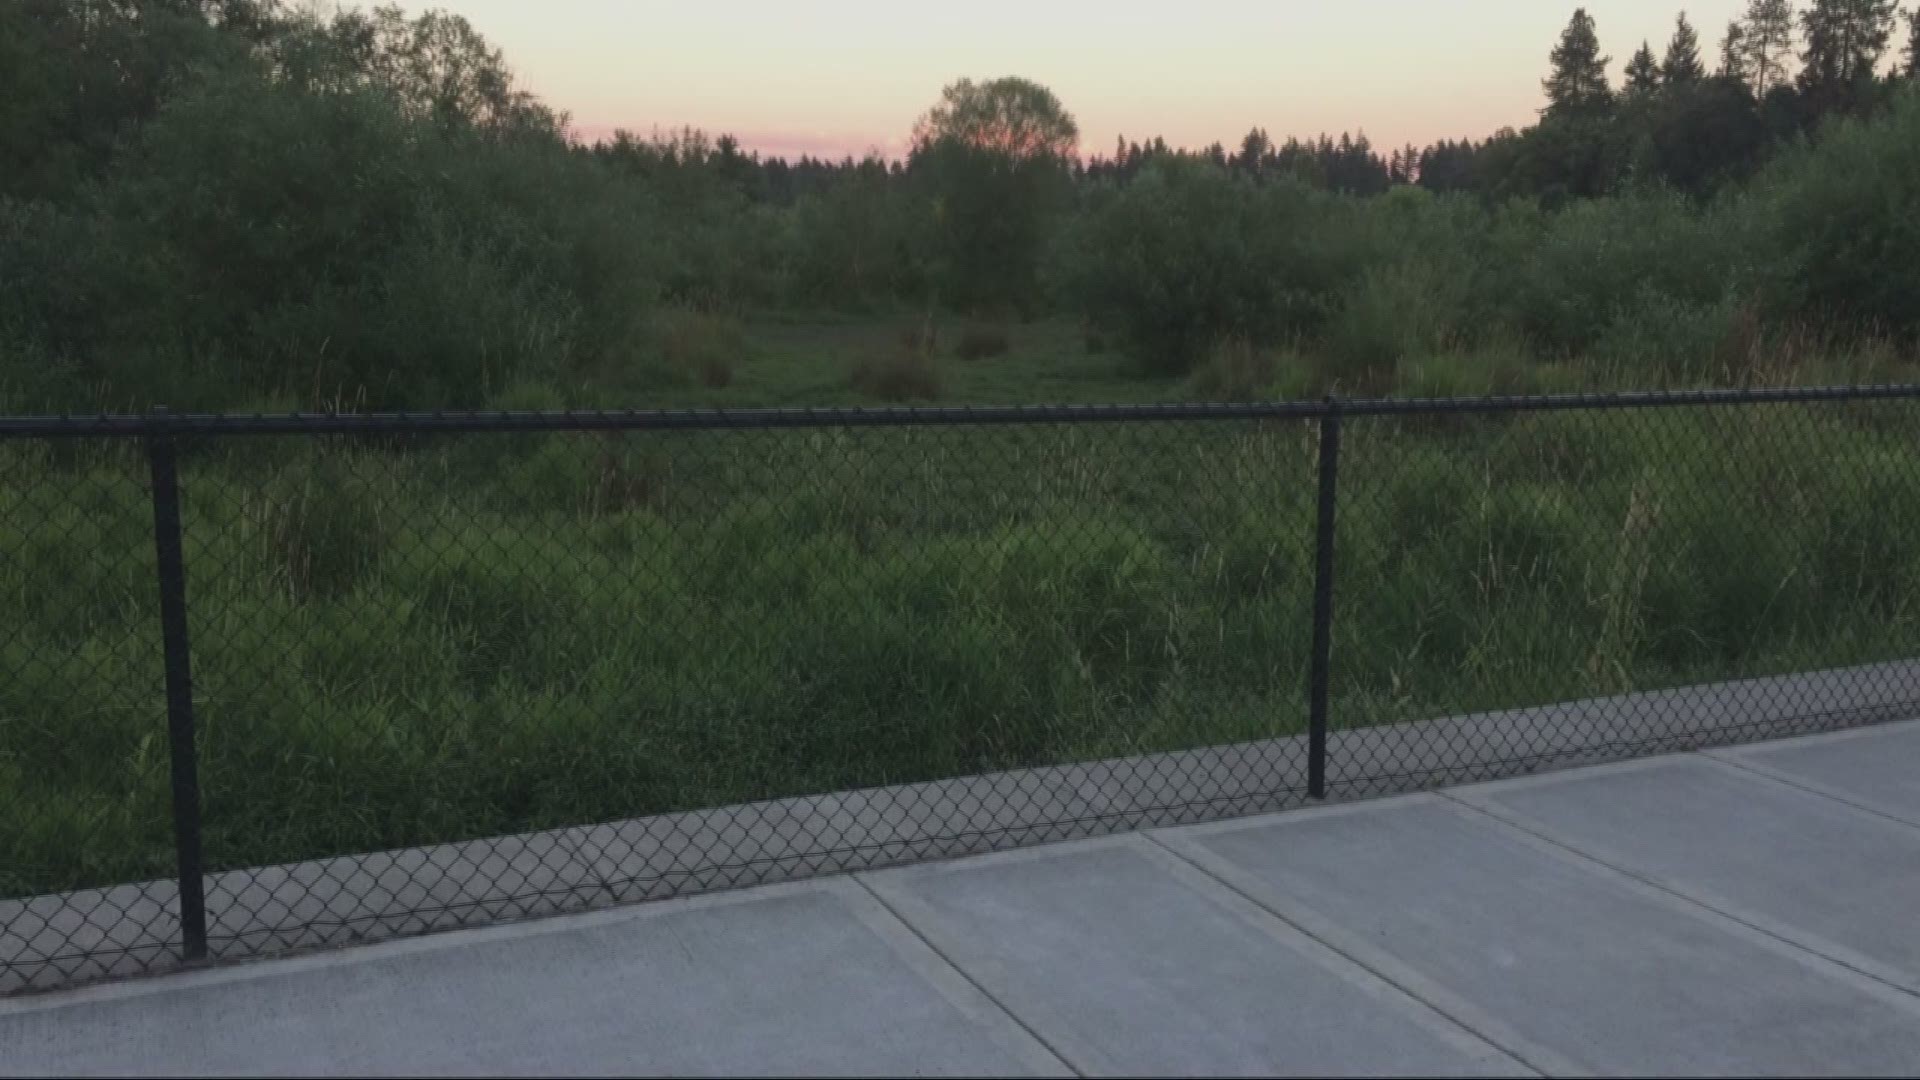 Cougar sighting at park raises concerns